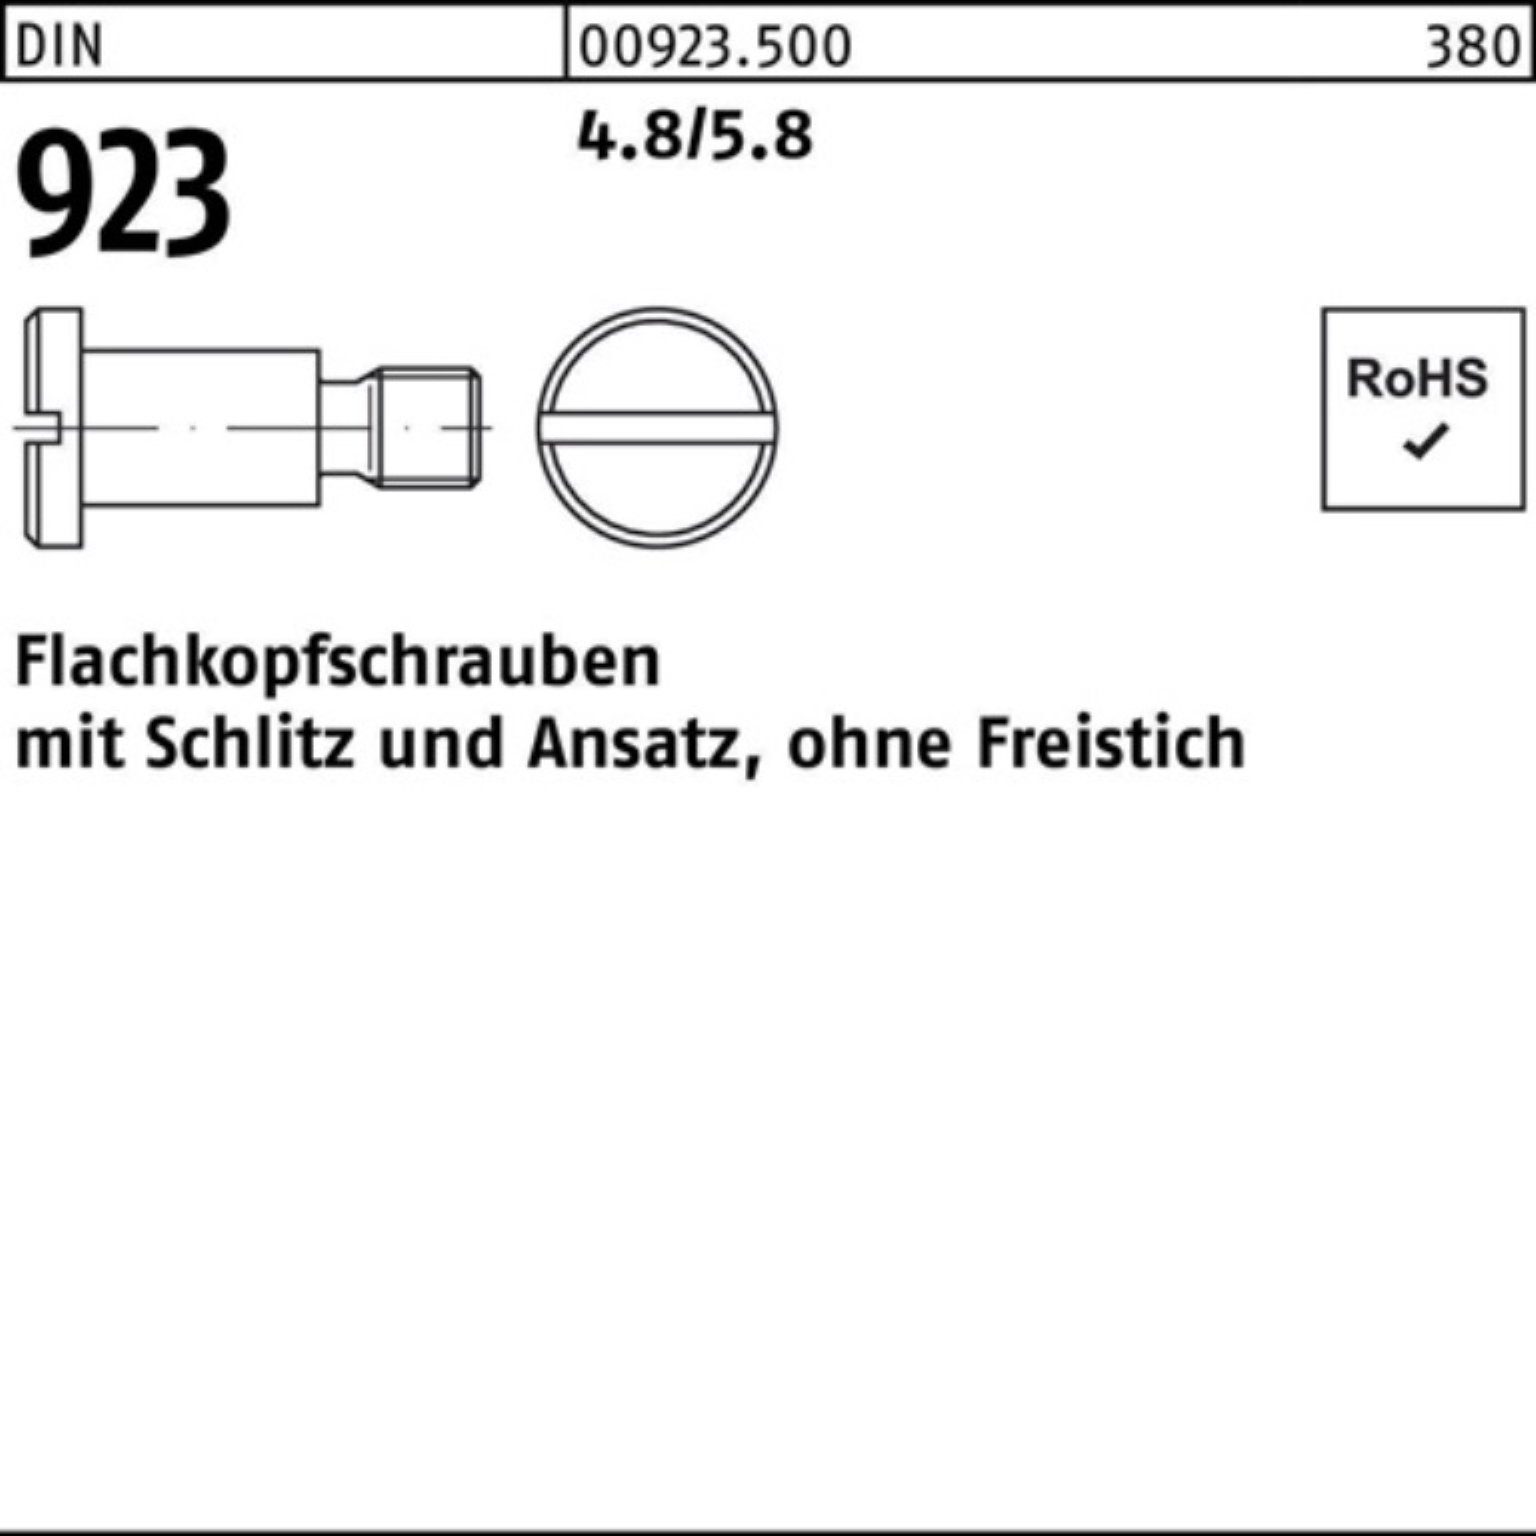 Flachkopfschraube M3x10x Pack Reyher 923 Schraube 100er 4,5 Schlitz/Ansatz 4.8/5.8 DIN